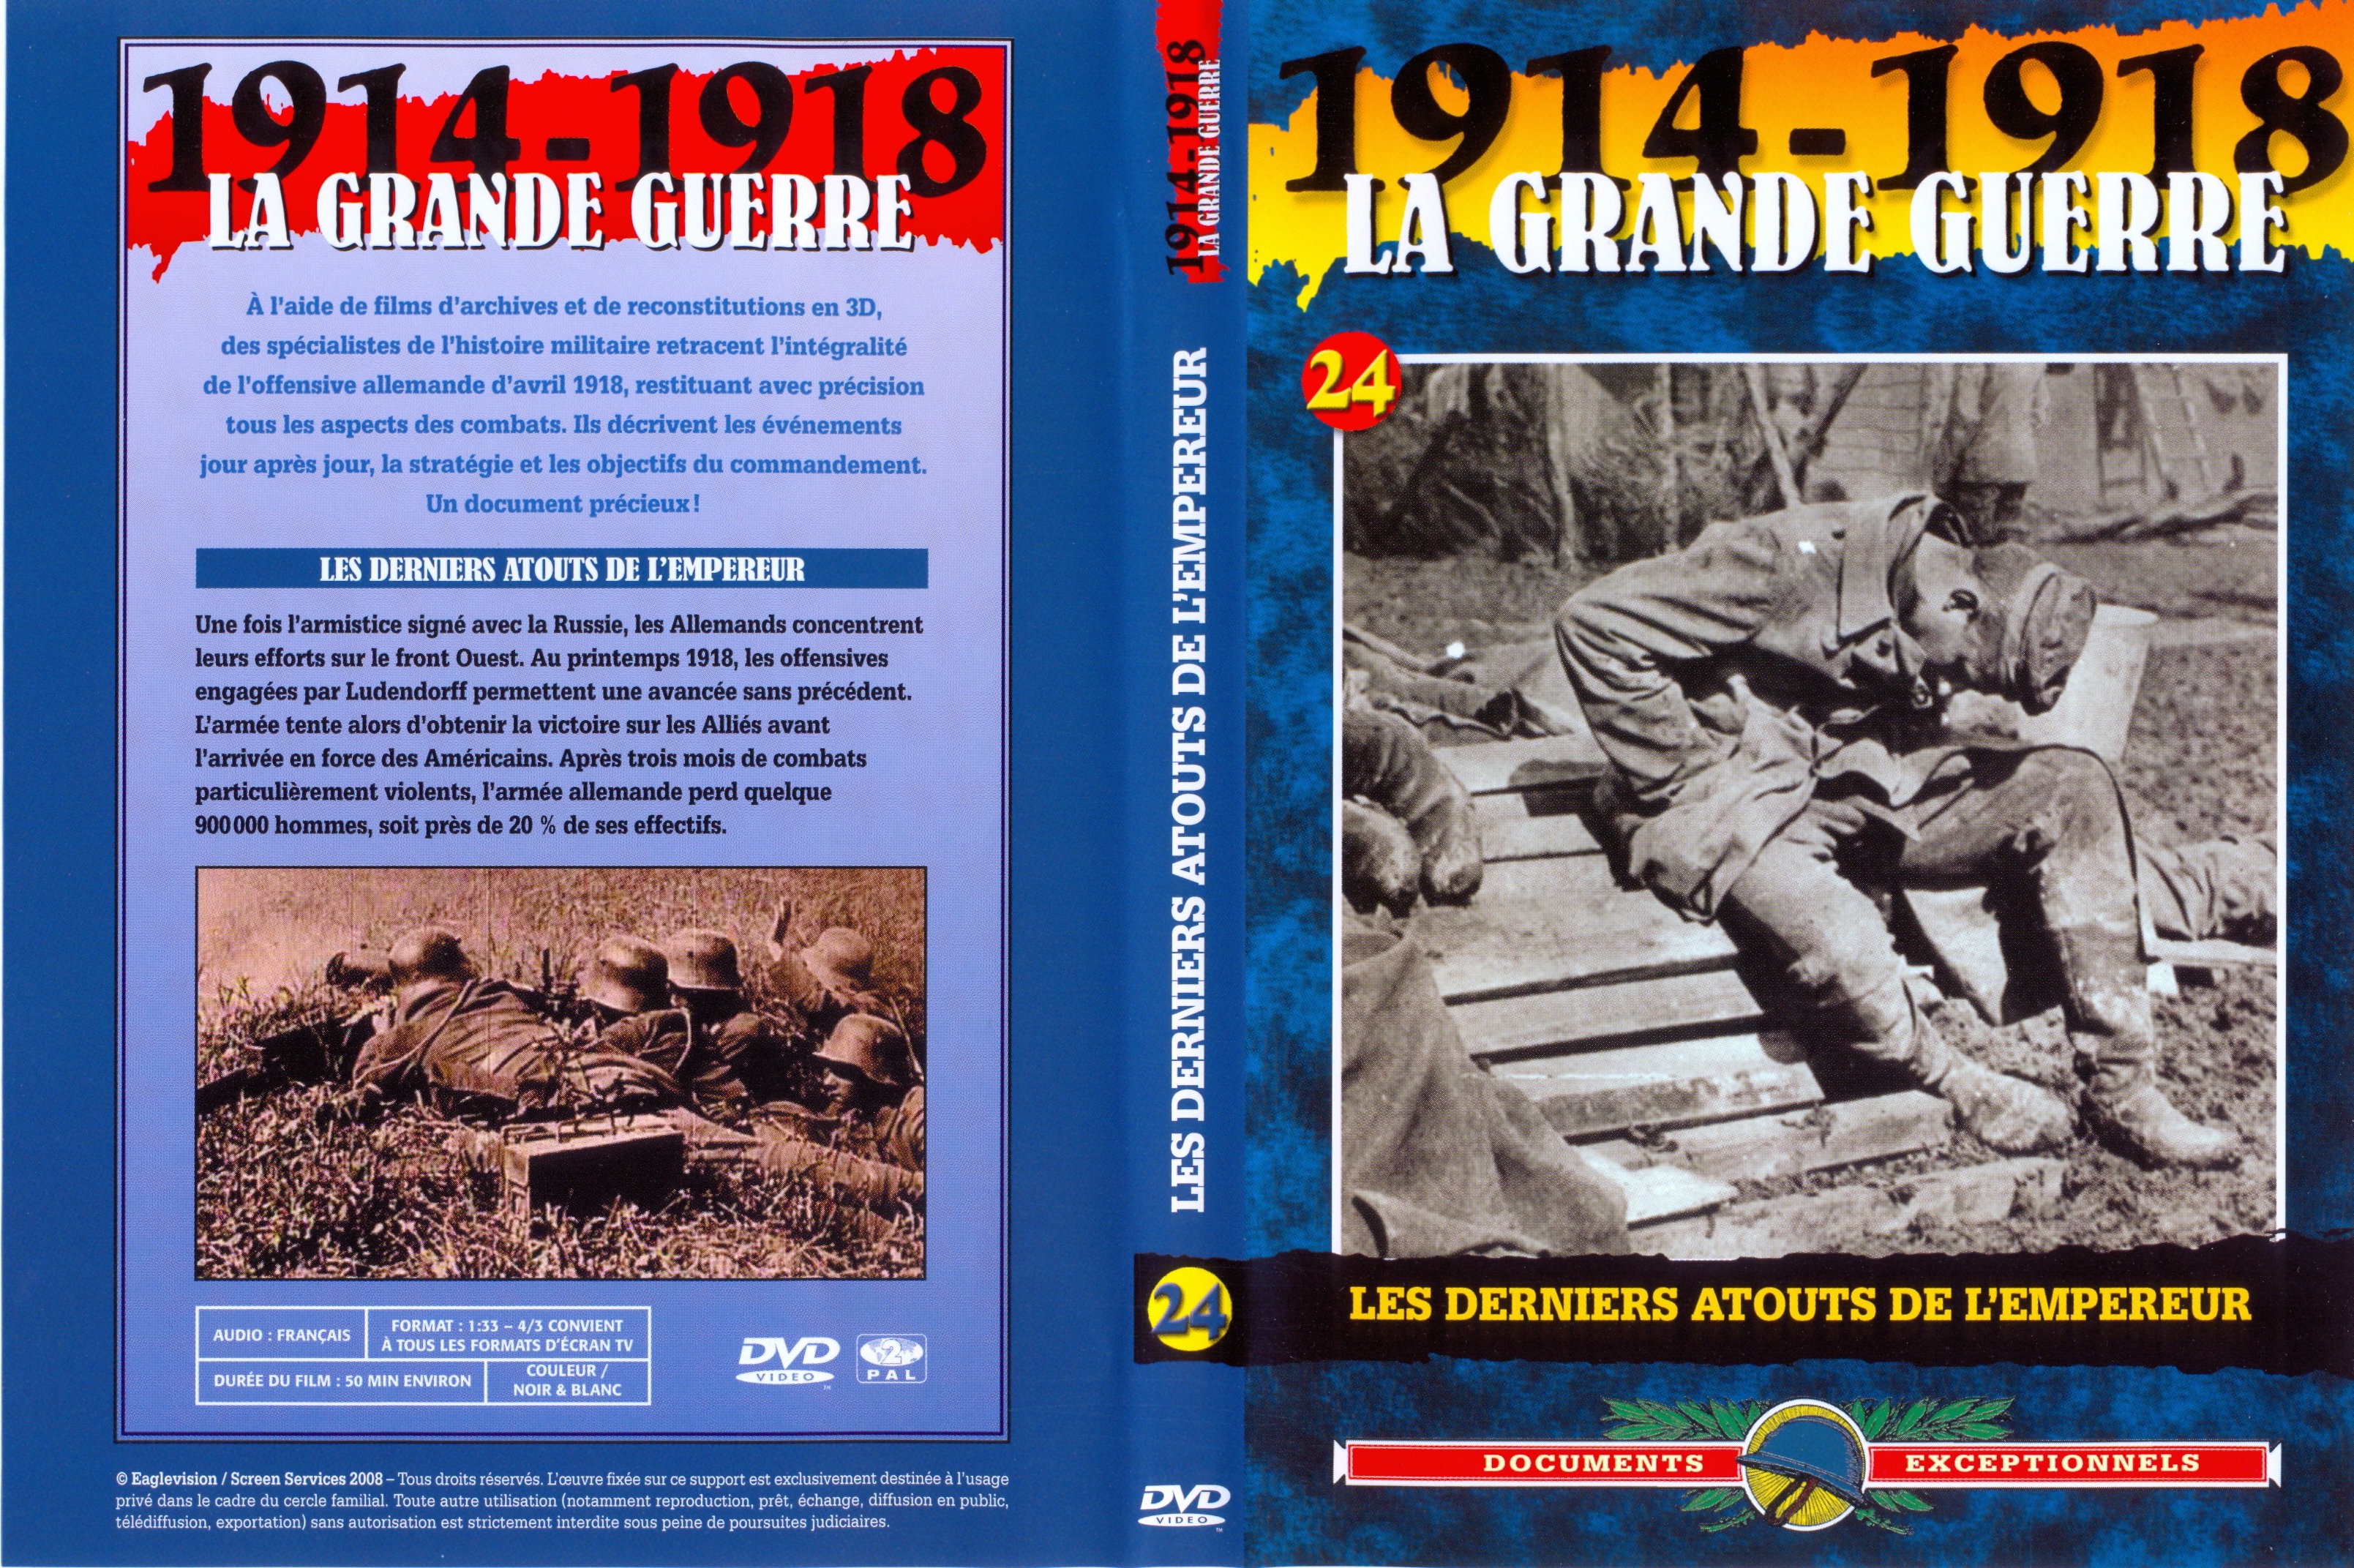 Jaquette DVD La grande guerre 1914 1918 vol 24